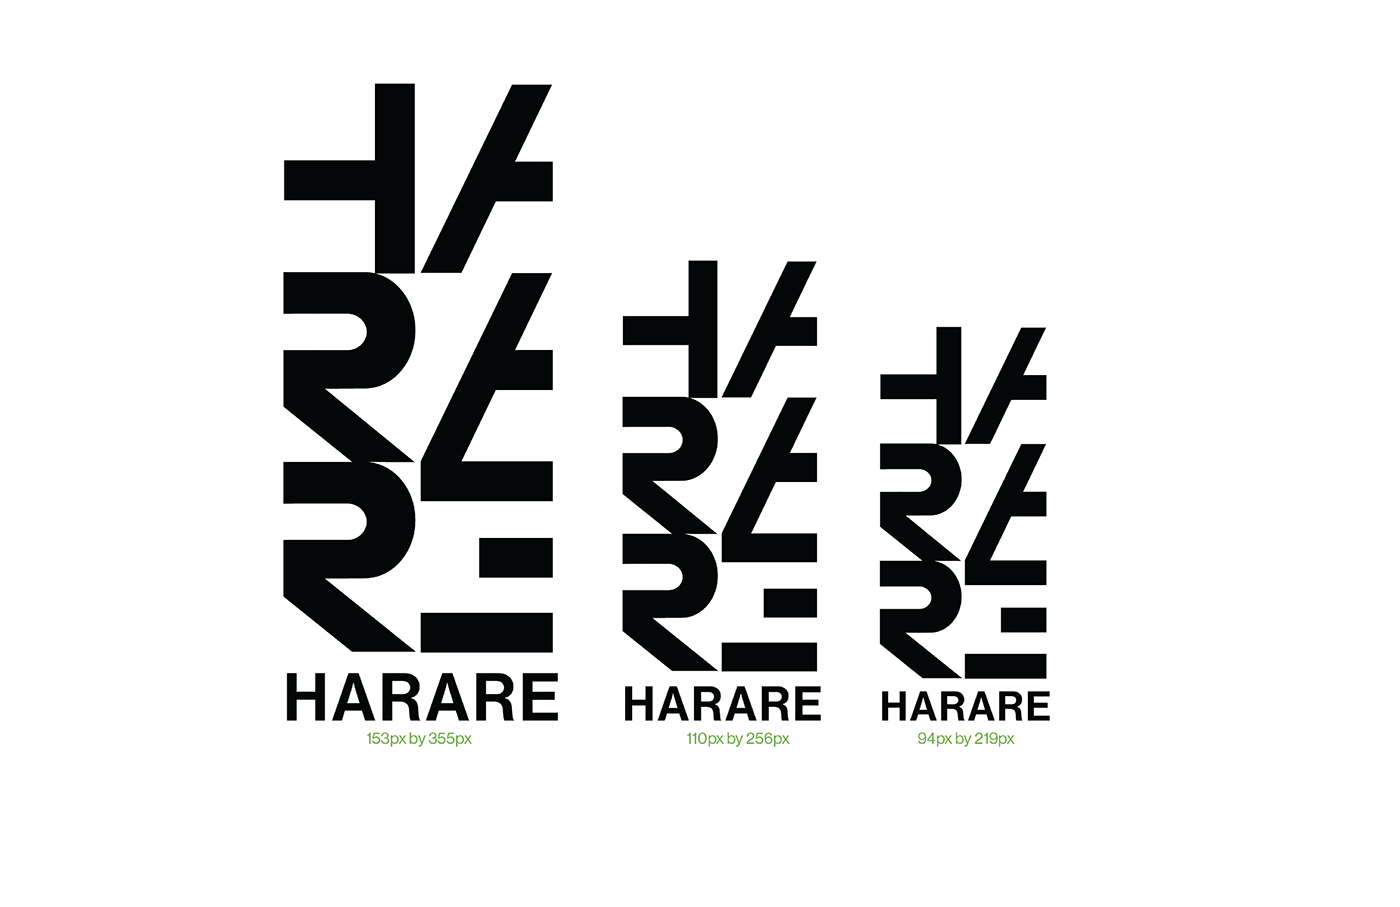 branding  design Zimbabwe harare